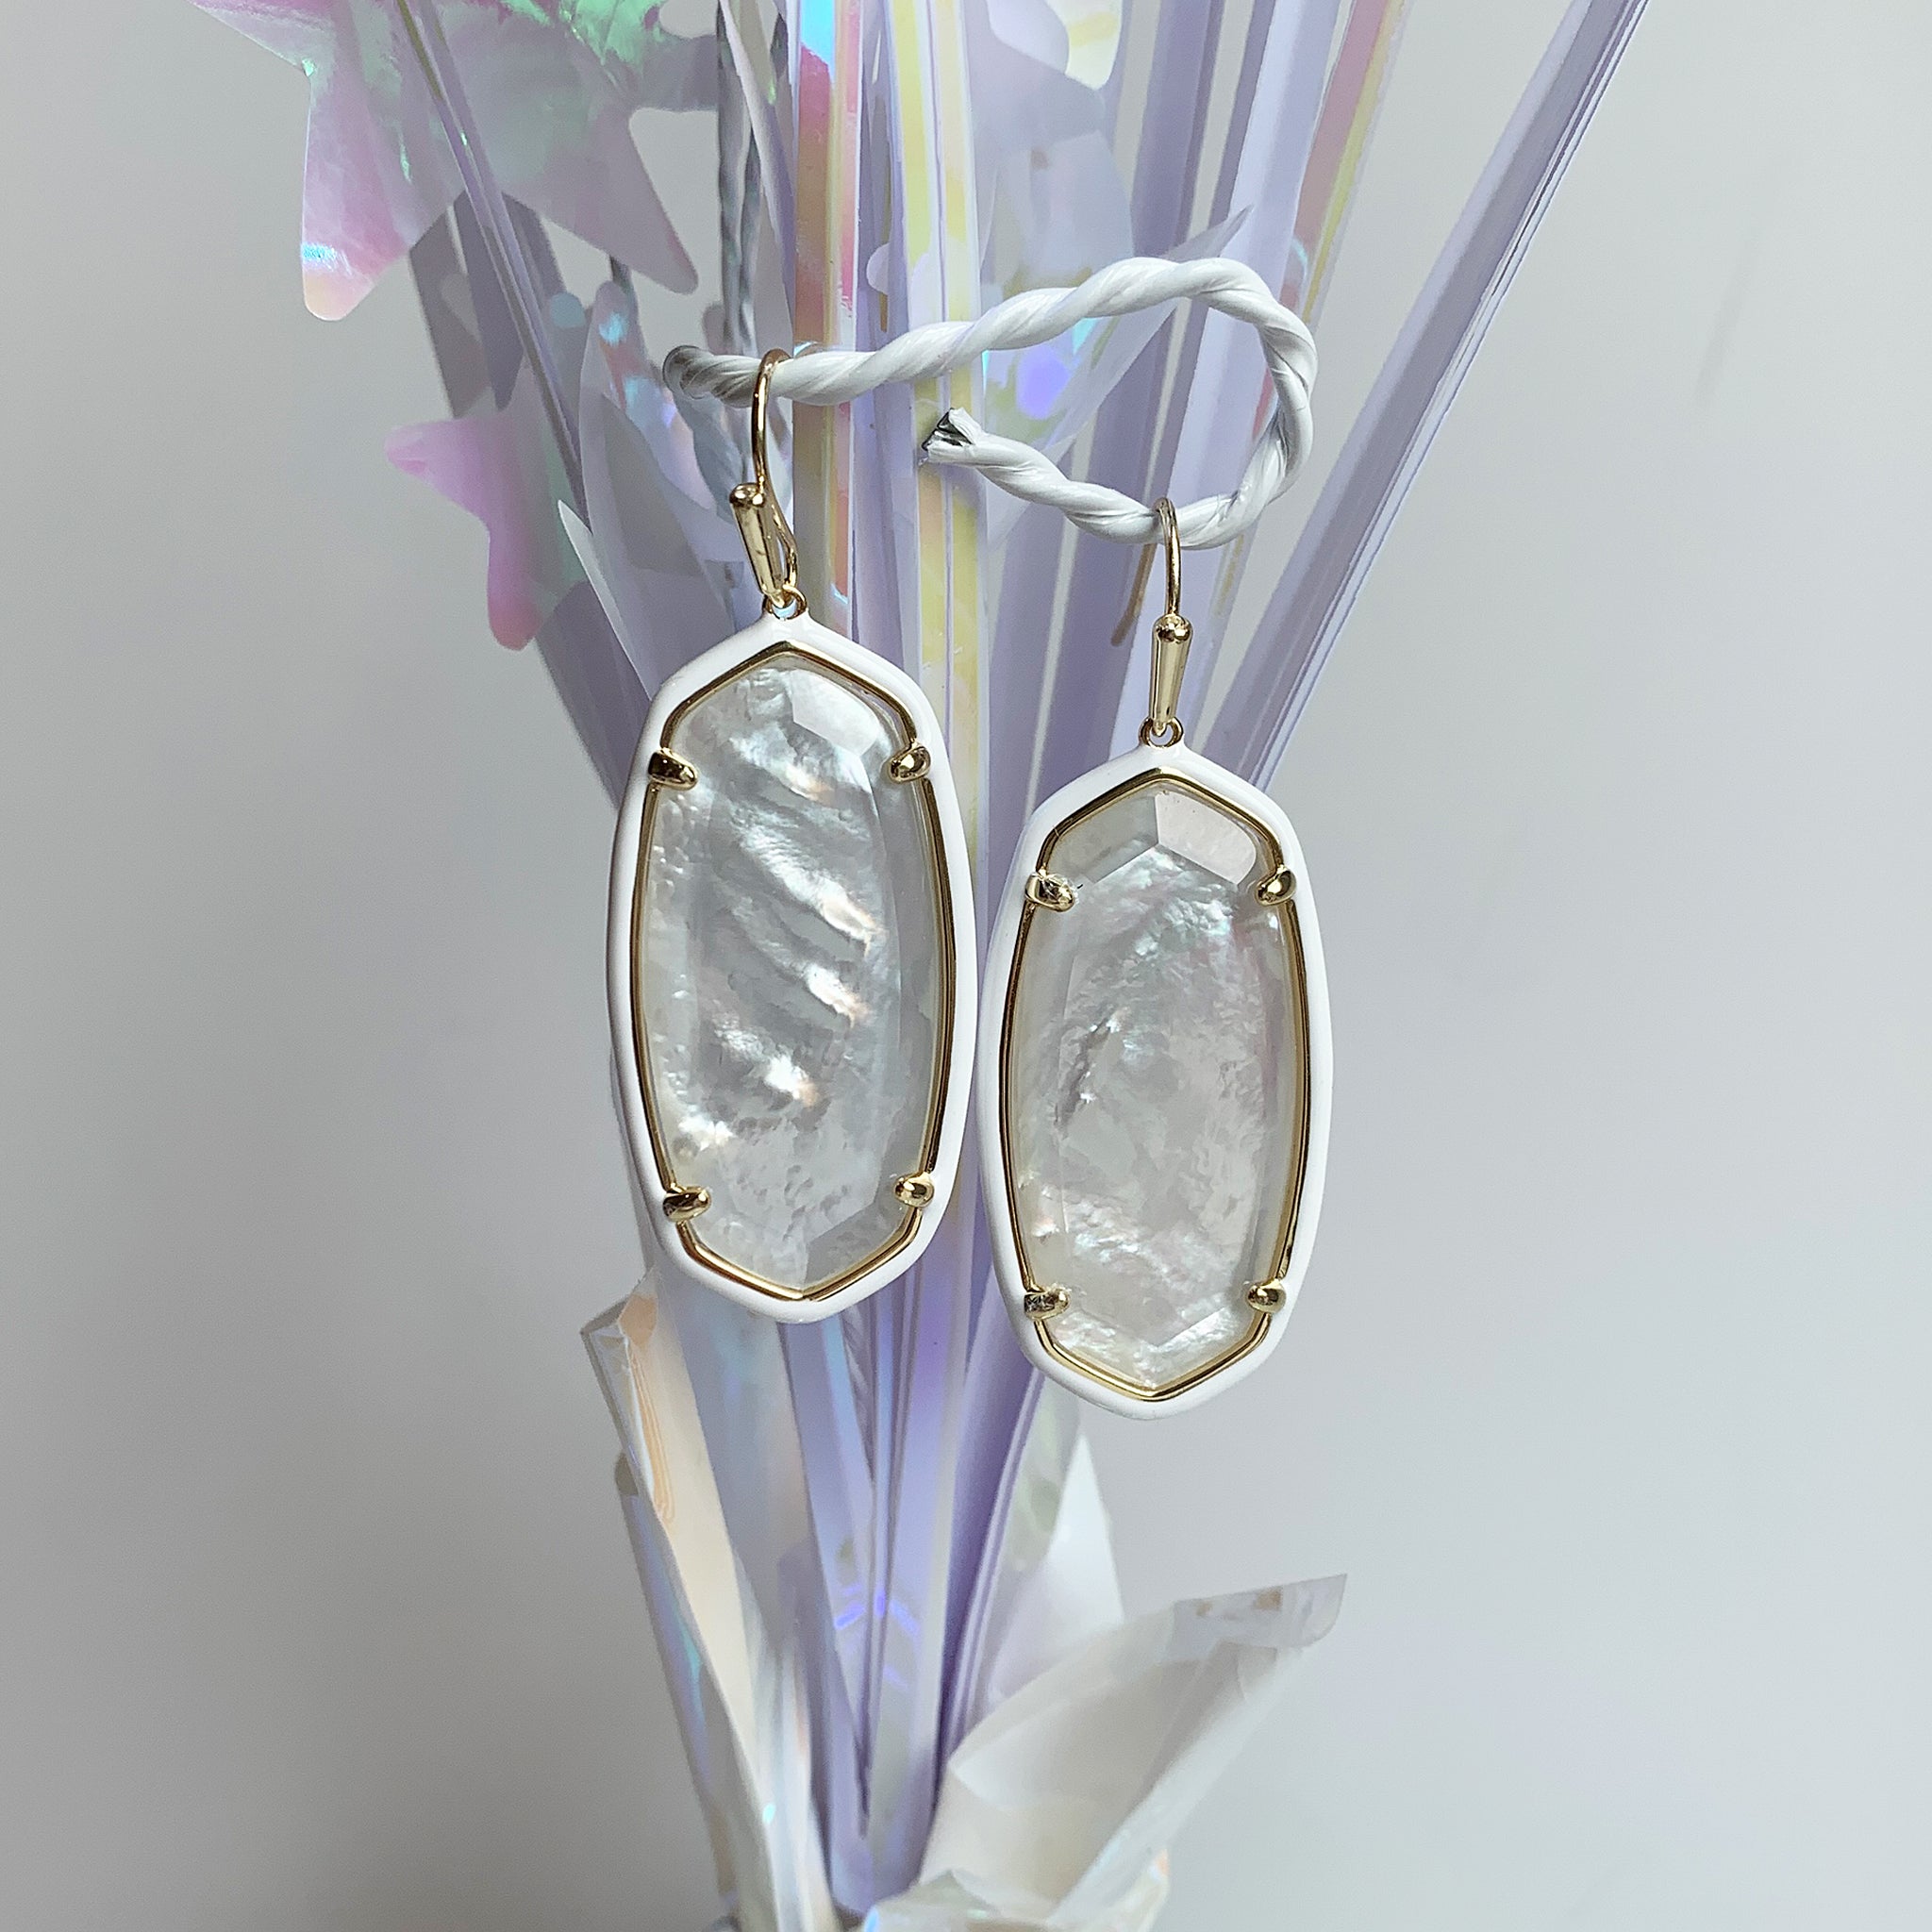 Kendra Scott Enamel Framed Elle Oval Dangle Earrings in Ivory Mother of Pearl